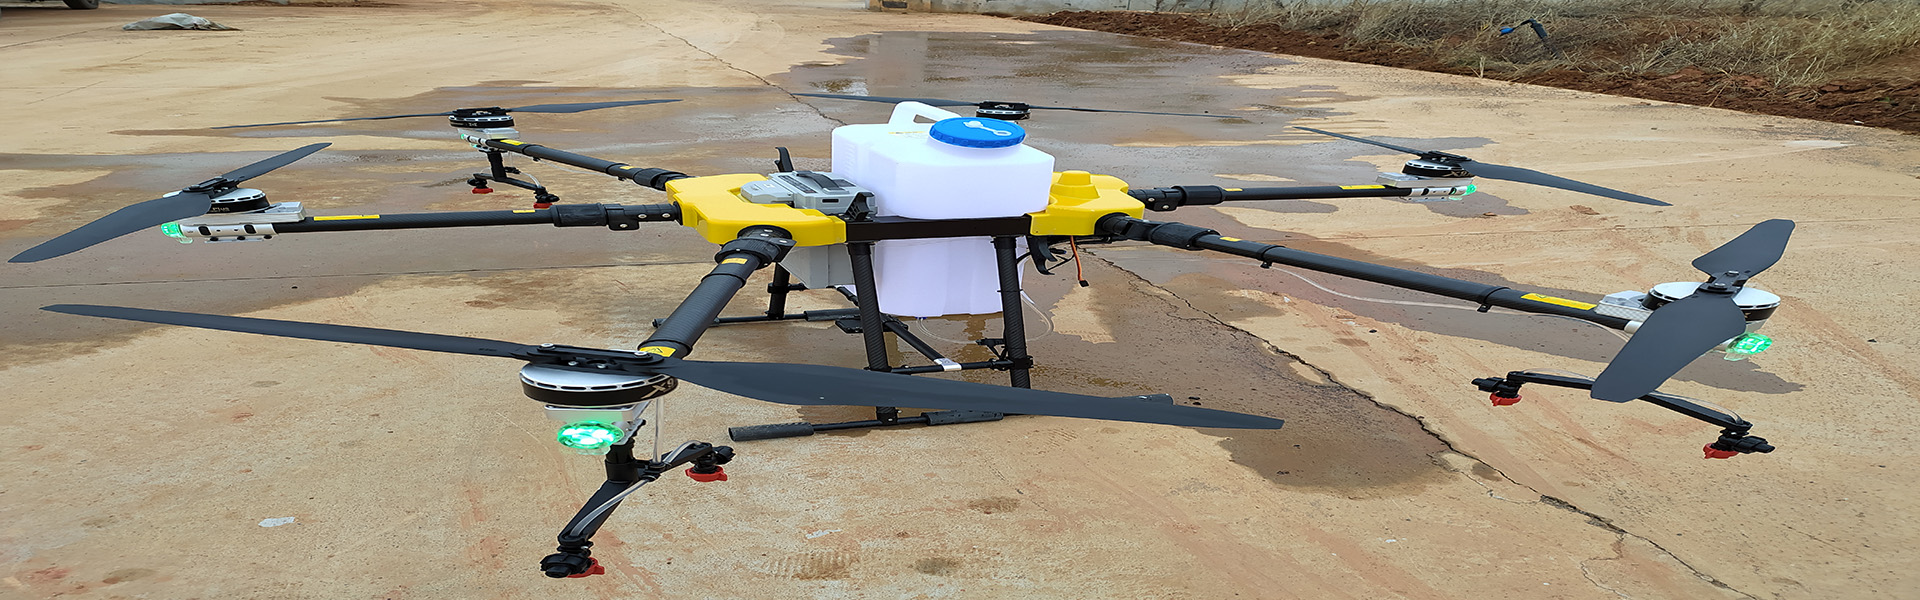 UAVnôngnghiệp, UAV bảo vệ thực vật, Phụ kiện UAVnôngnghiệp,Shenzhen fnyuav technology co.LTD